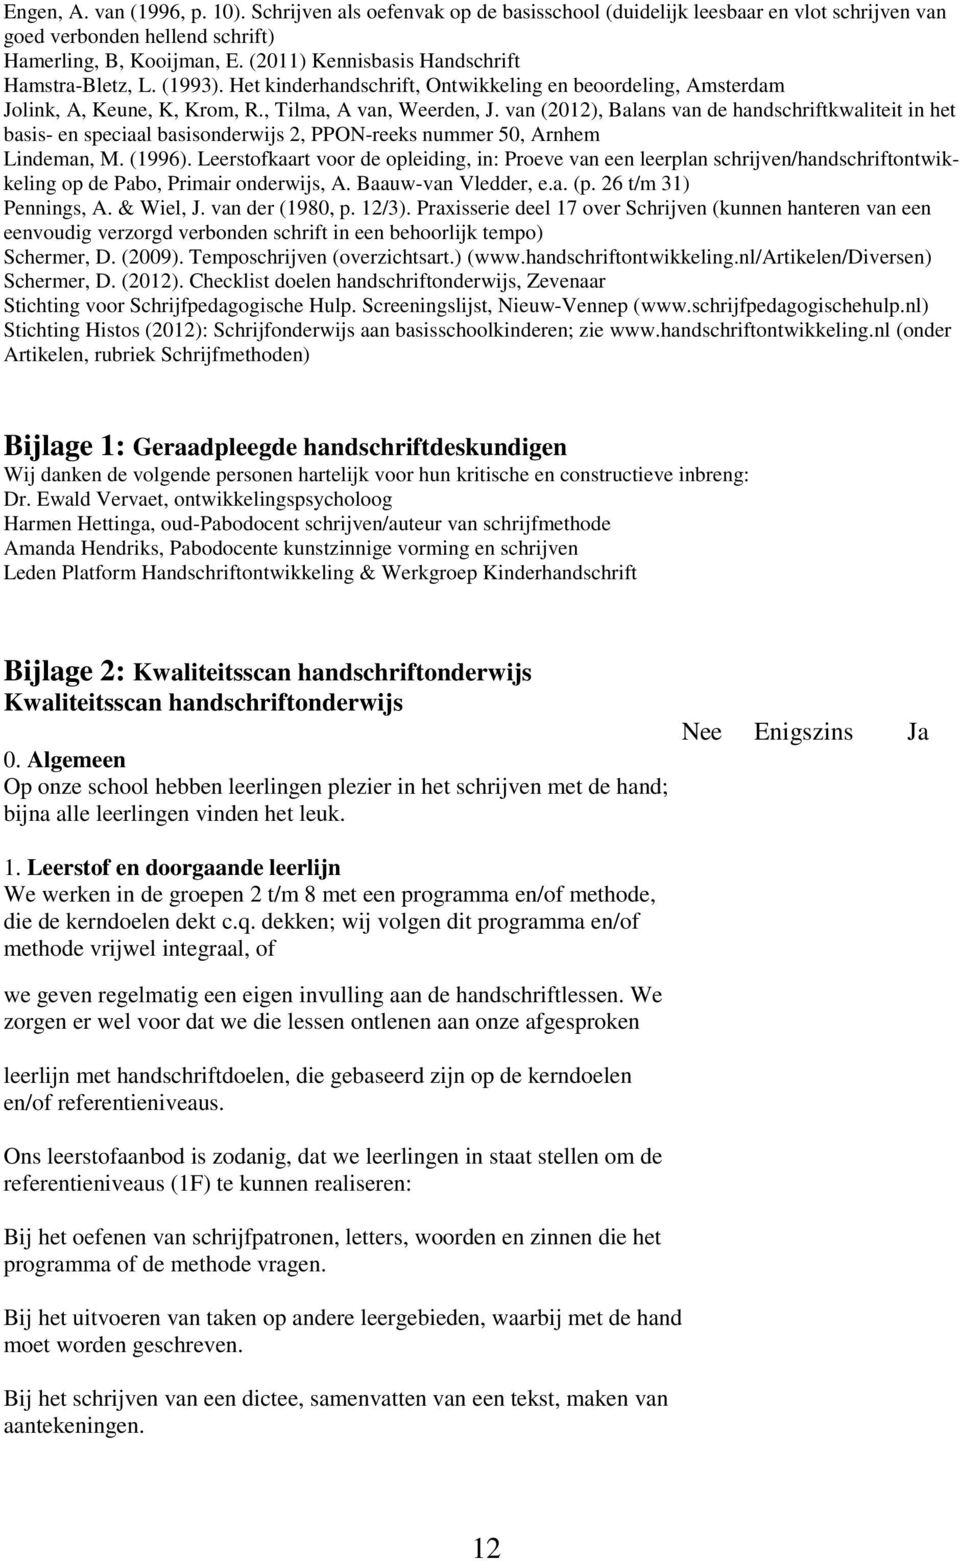 van (2012), Balans van de handschriftkwaliteit in het basis- en speciaal basisonderwijs 2, PPON-reeks nummer 50, Arnhem Lindeman, M. (1996).